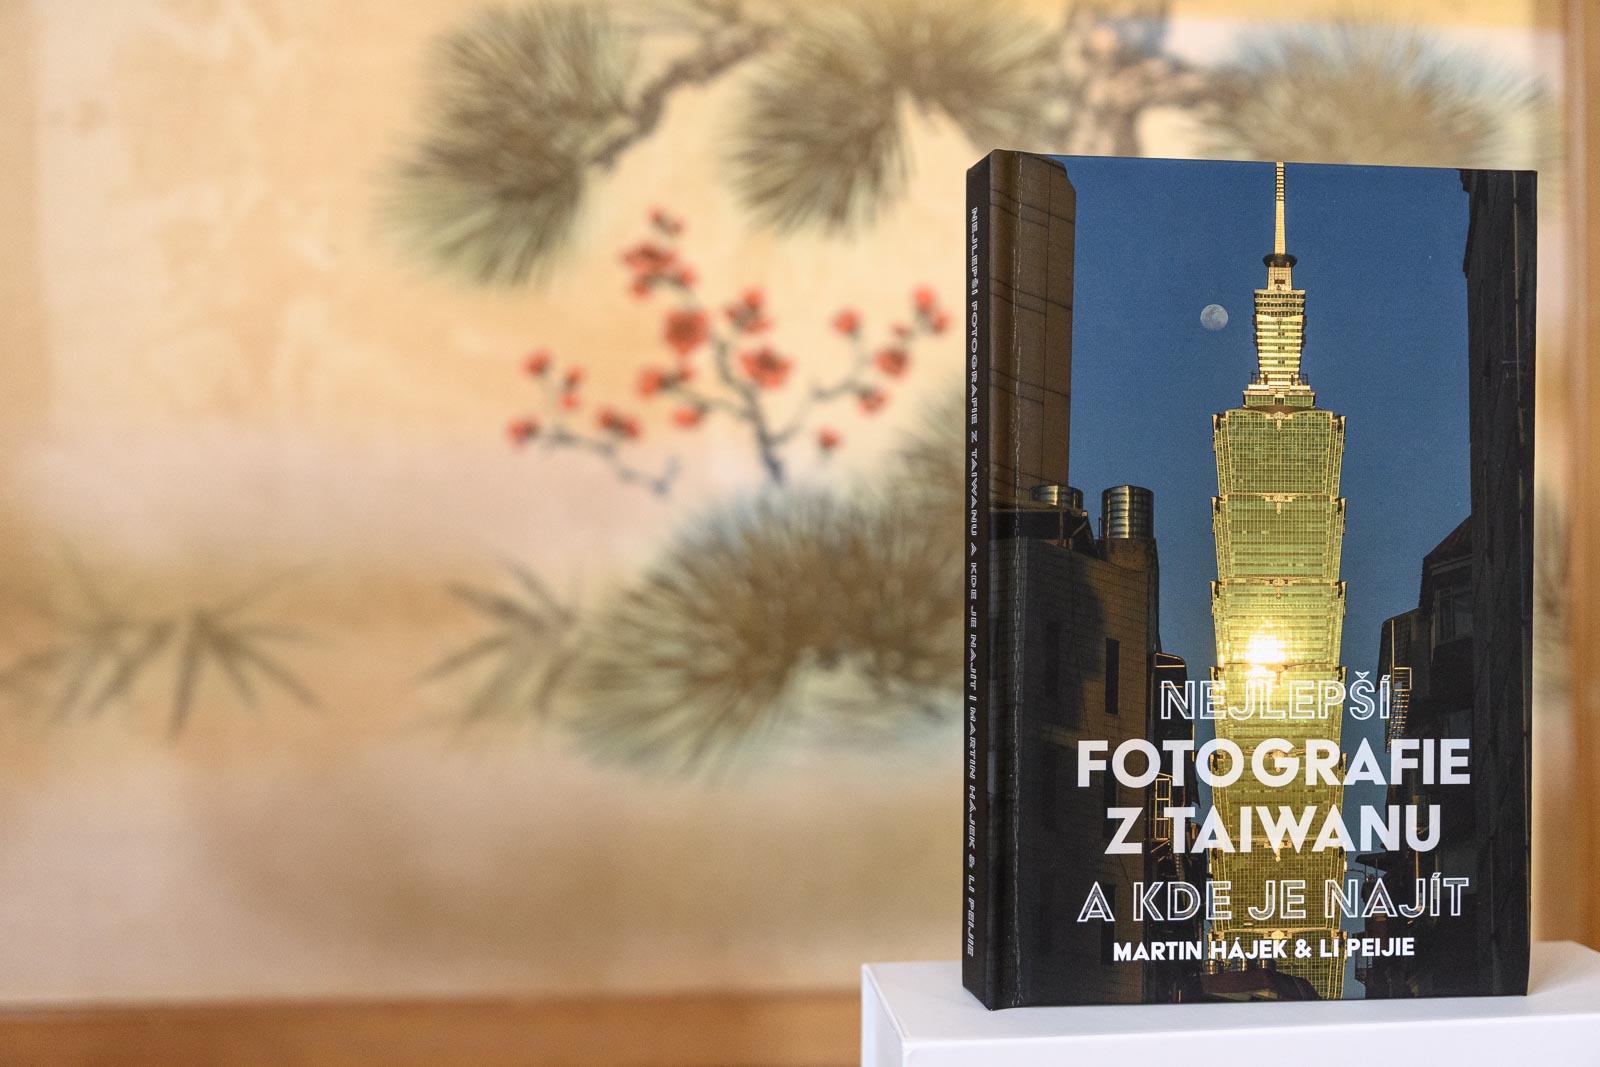 Knižní průvodce Nejlepší fotografie z Tchaj-wanu a kde je najít